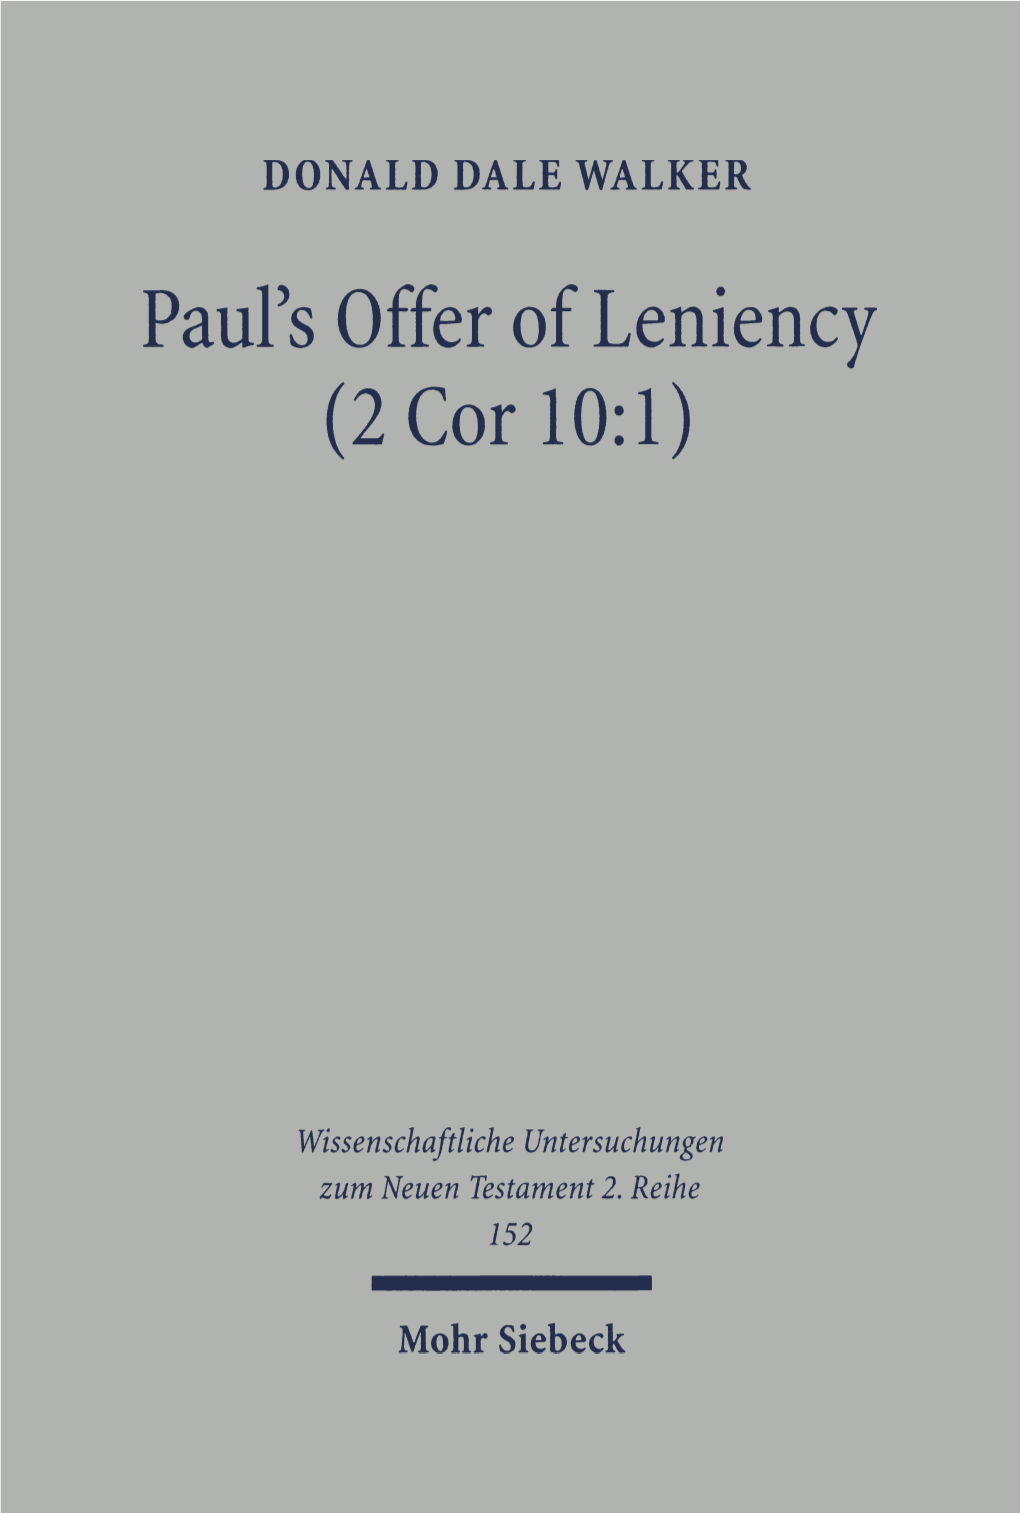 Paul's Offer of Leniency (2 Cor 10:1)